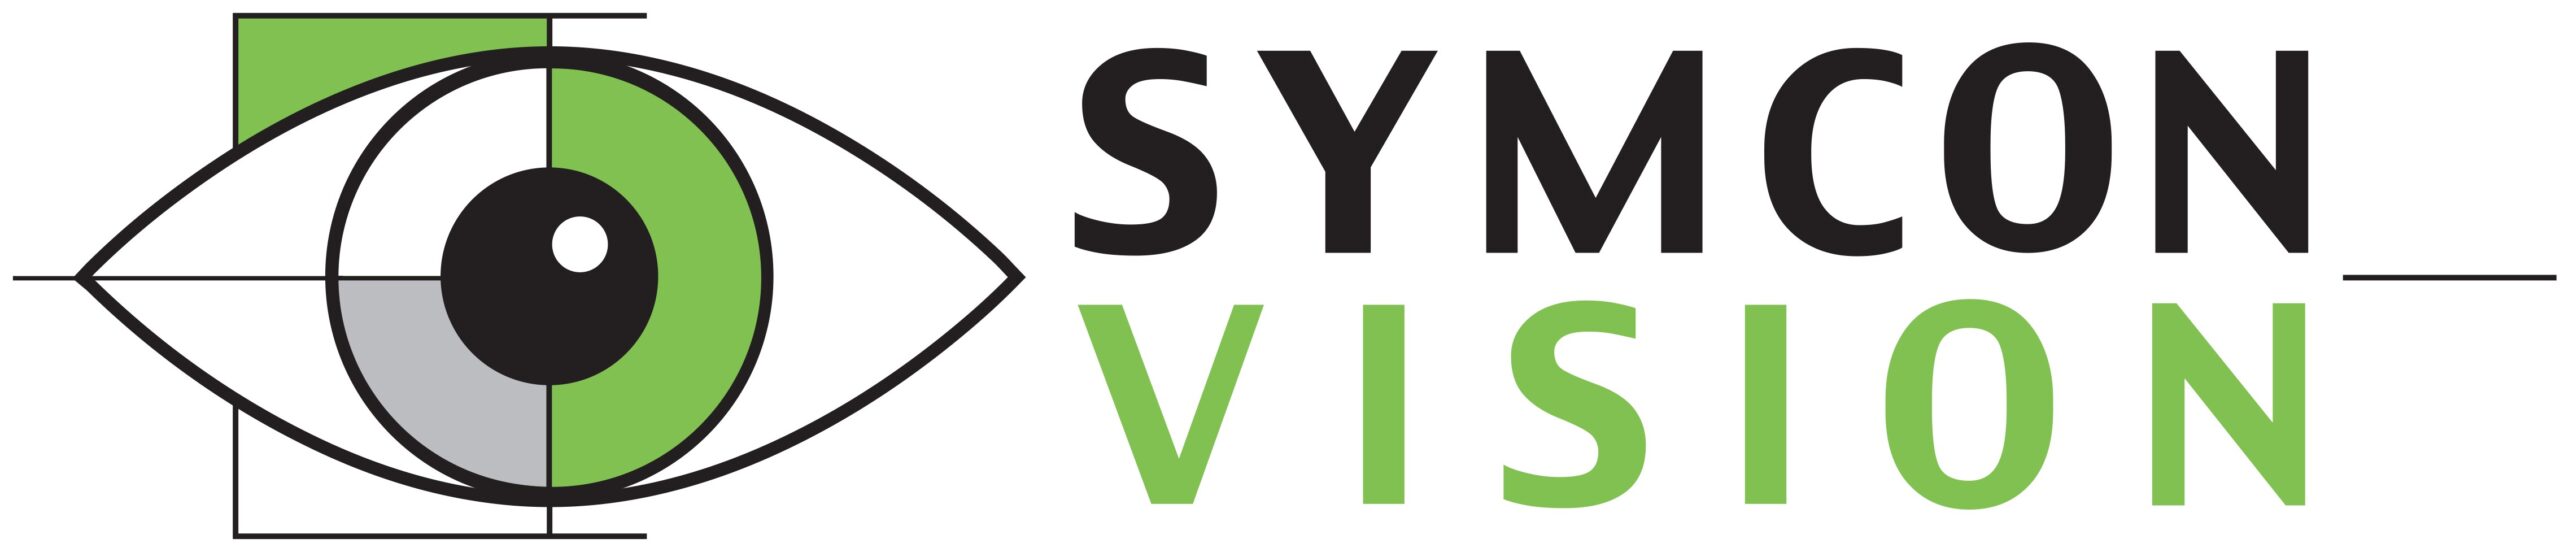 Symcon Vision